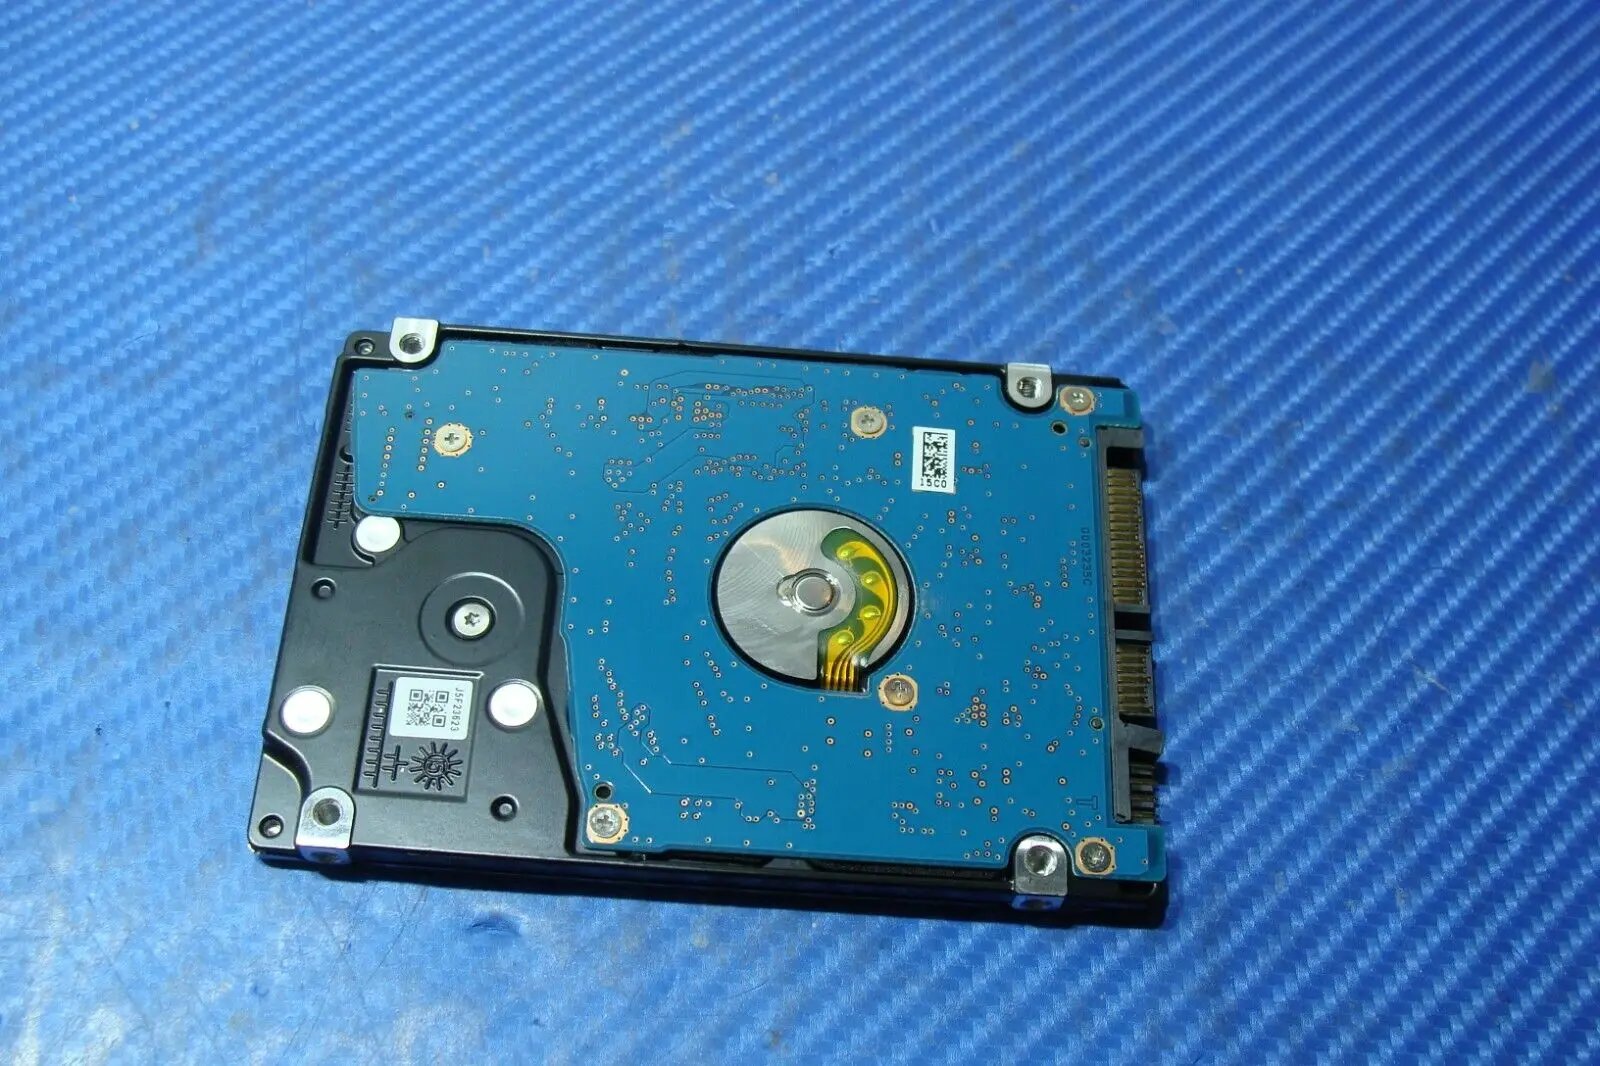 Dell 5552 Toshiba 500GB 2.5